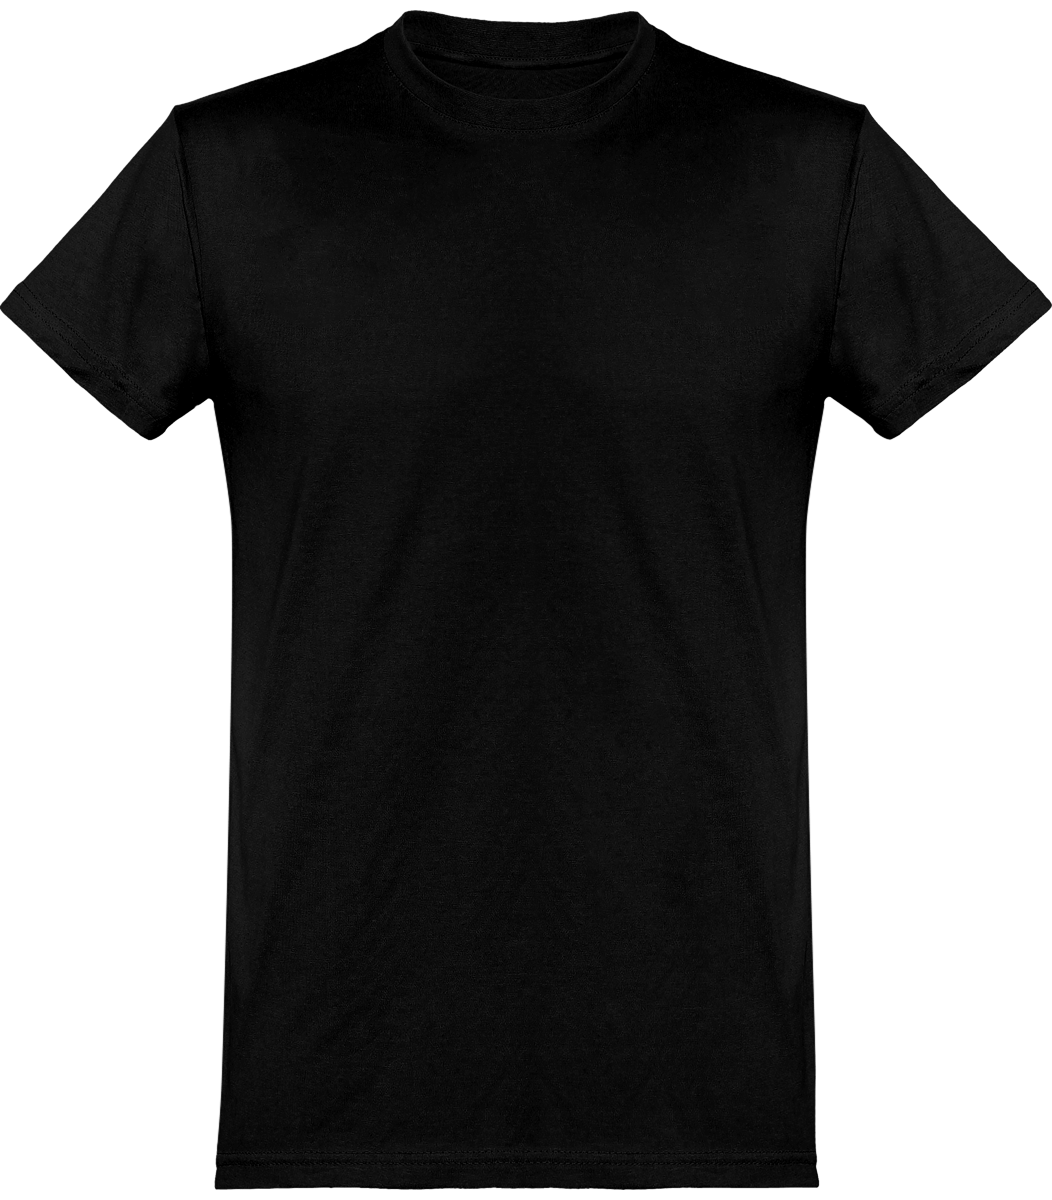 Tee-Shirt Homme Coupe Basique 100% Coton À Personnaliser Urban Black